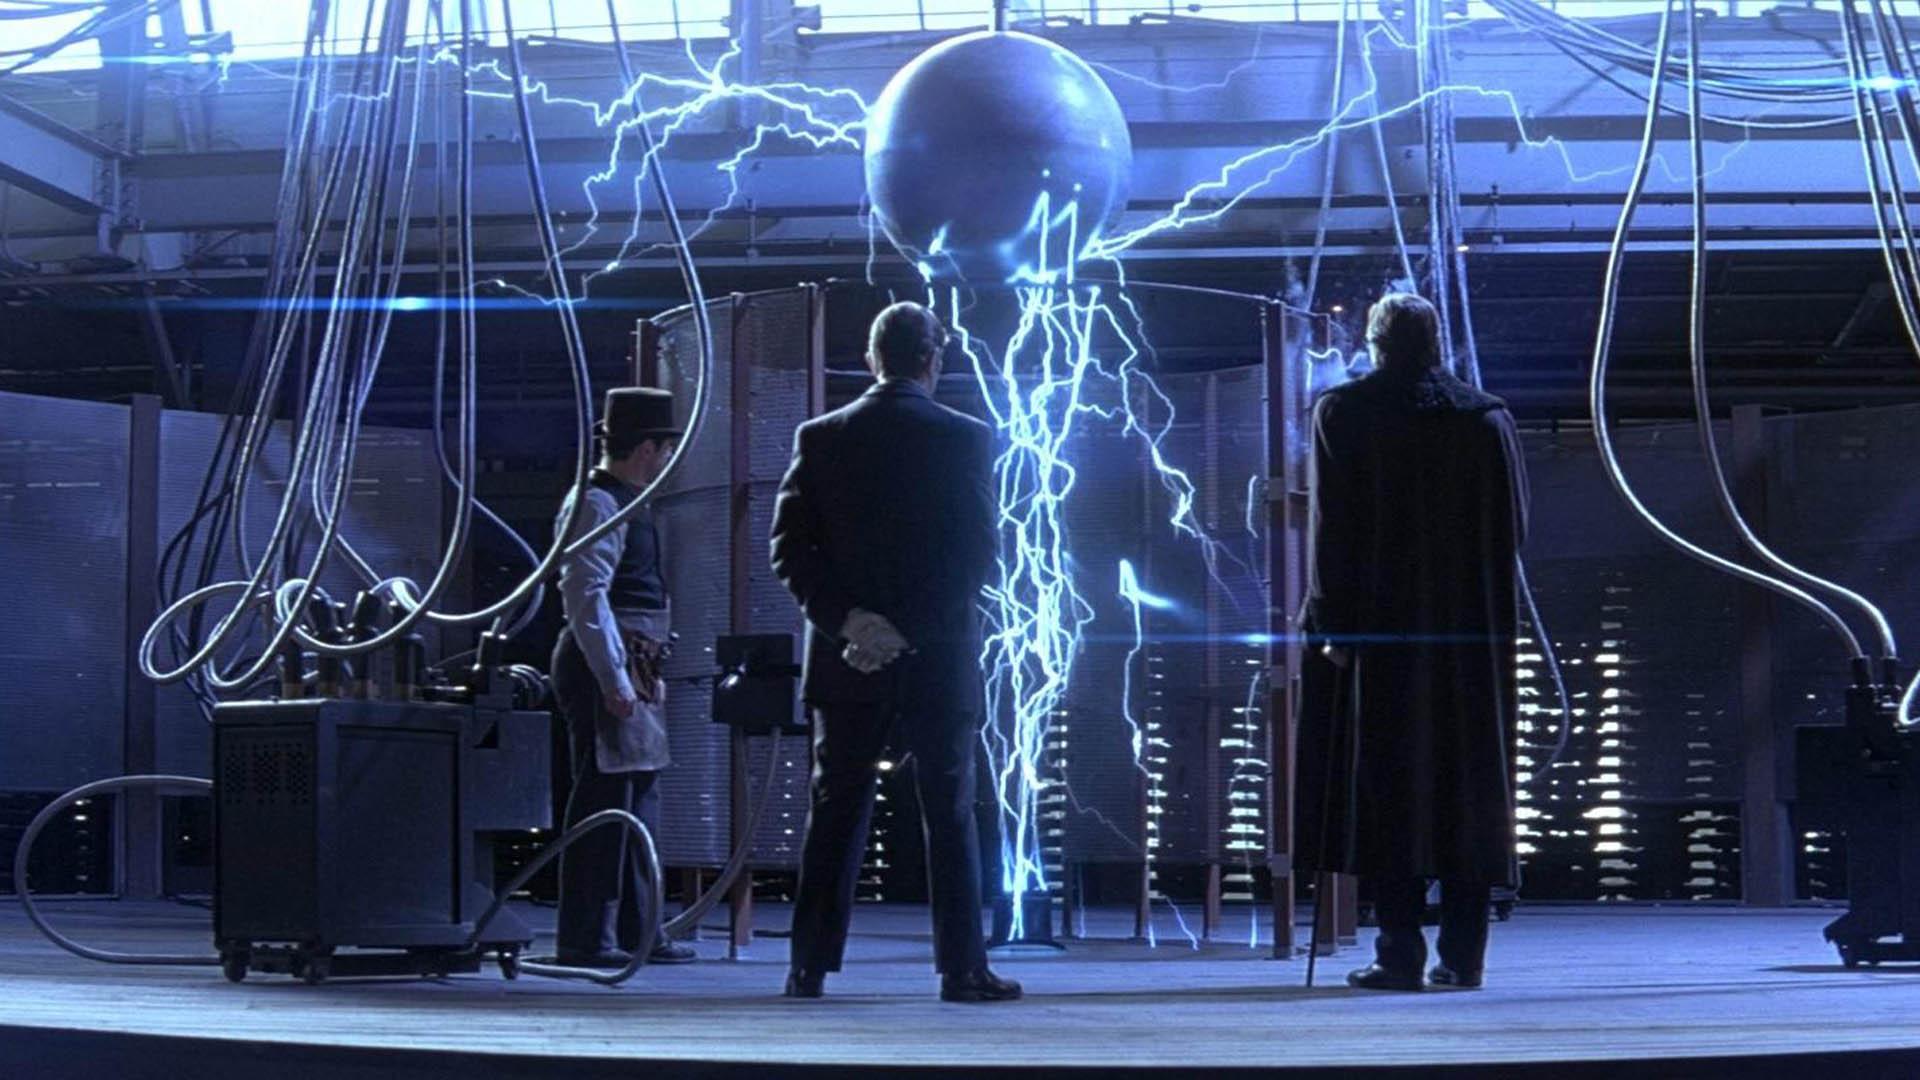 تصویری از یک سکانس فیلم The Prestige و تست دستگاه برقی